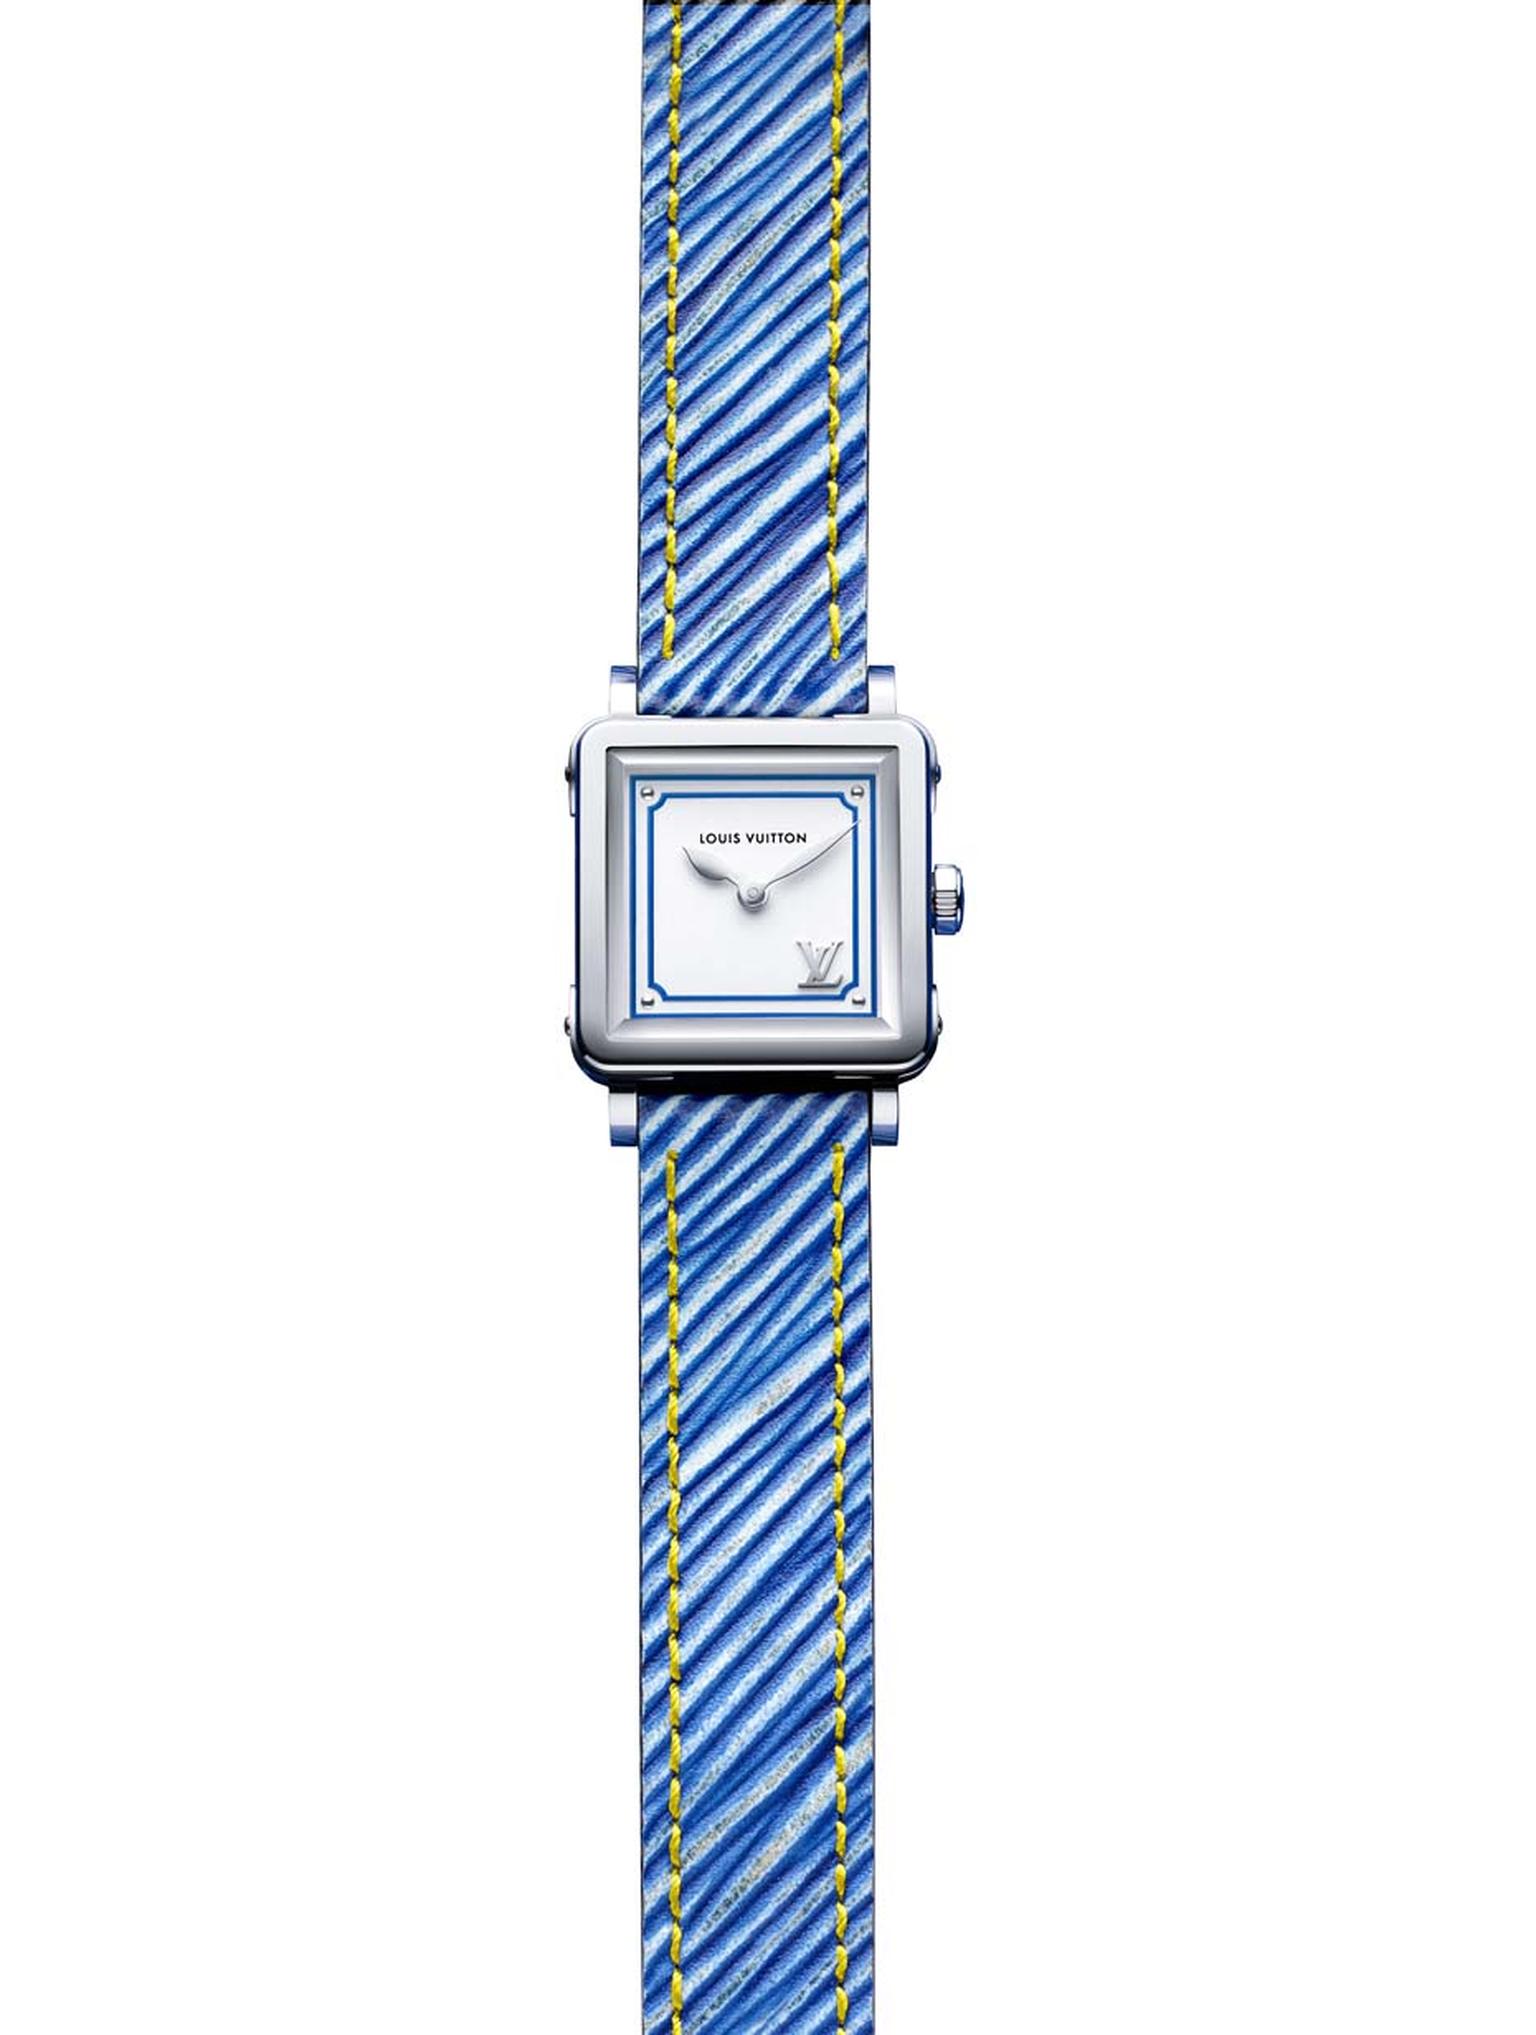 Emprise Epi ladies' watch in denim blue, Louis Vuitton